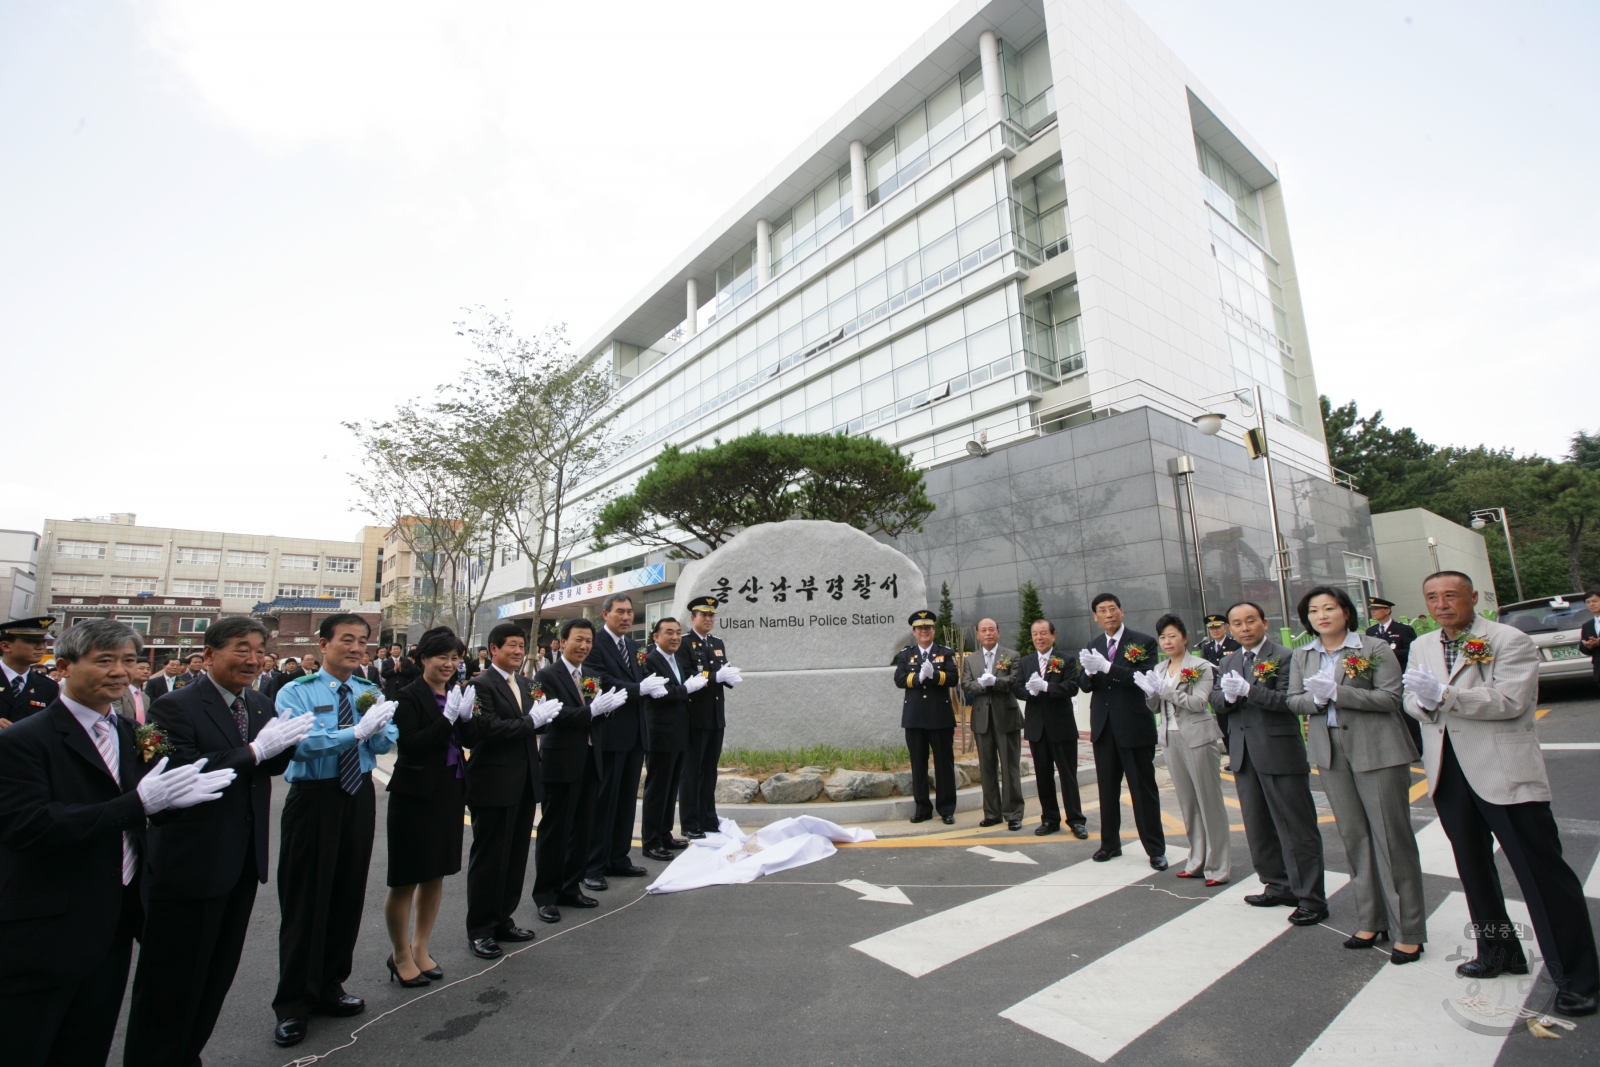 울산남부경찰서 준공식 의 사진